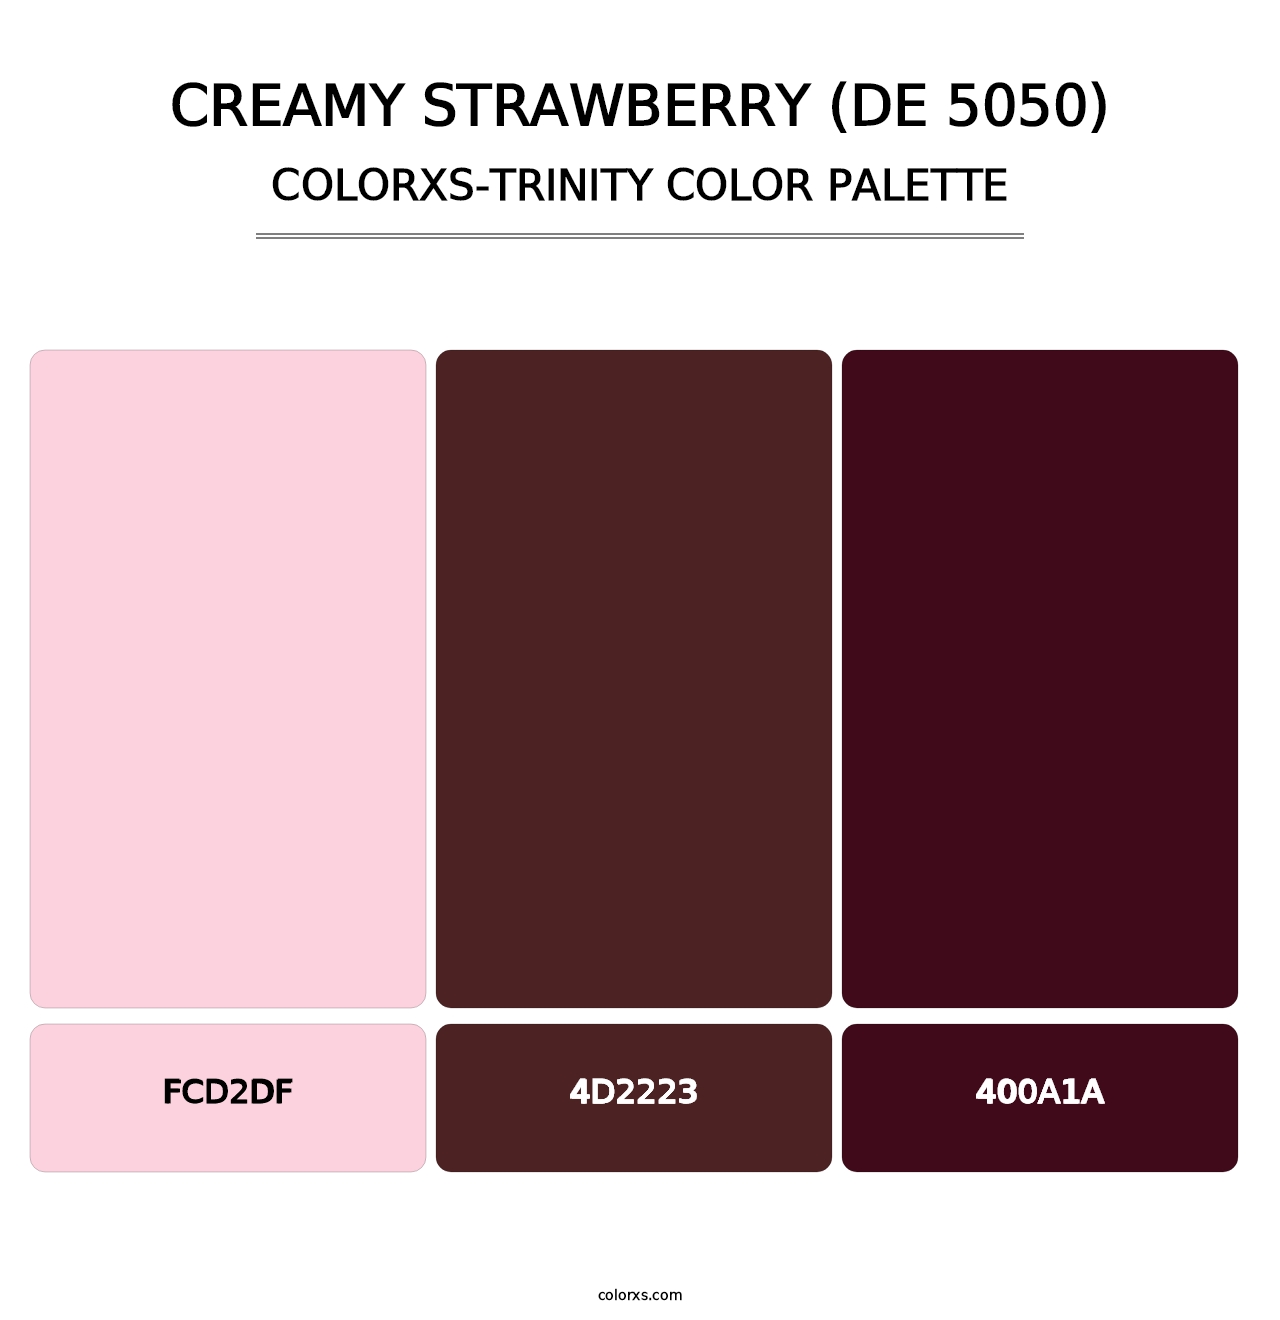 Creamy Strawberry (DE 5050) - Colorxs Trinity Palette